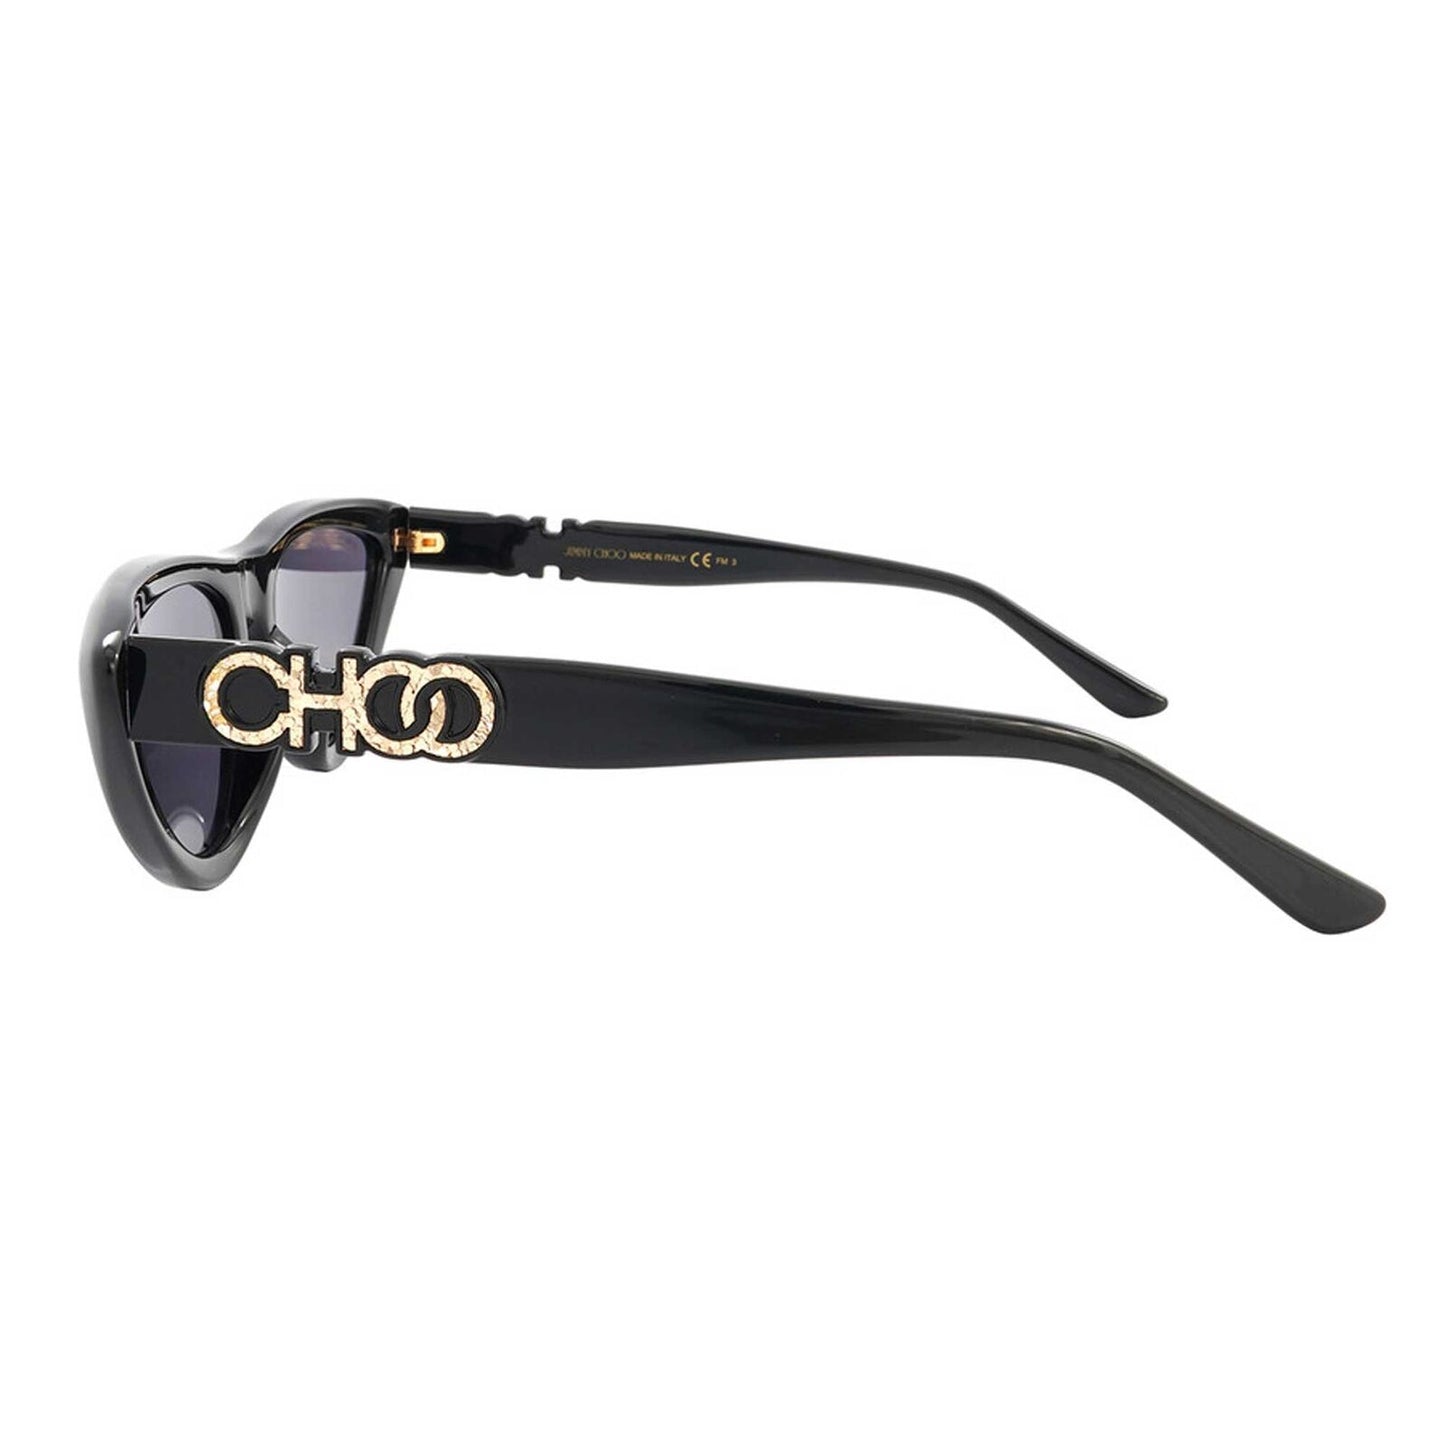 Jimmy Choo SPARKSGS-0807 IR 55mm New Sunglasses